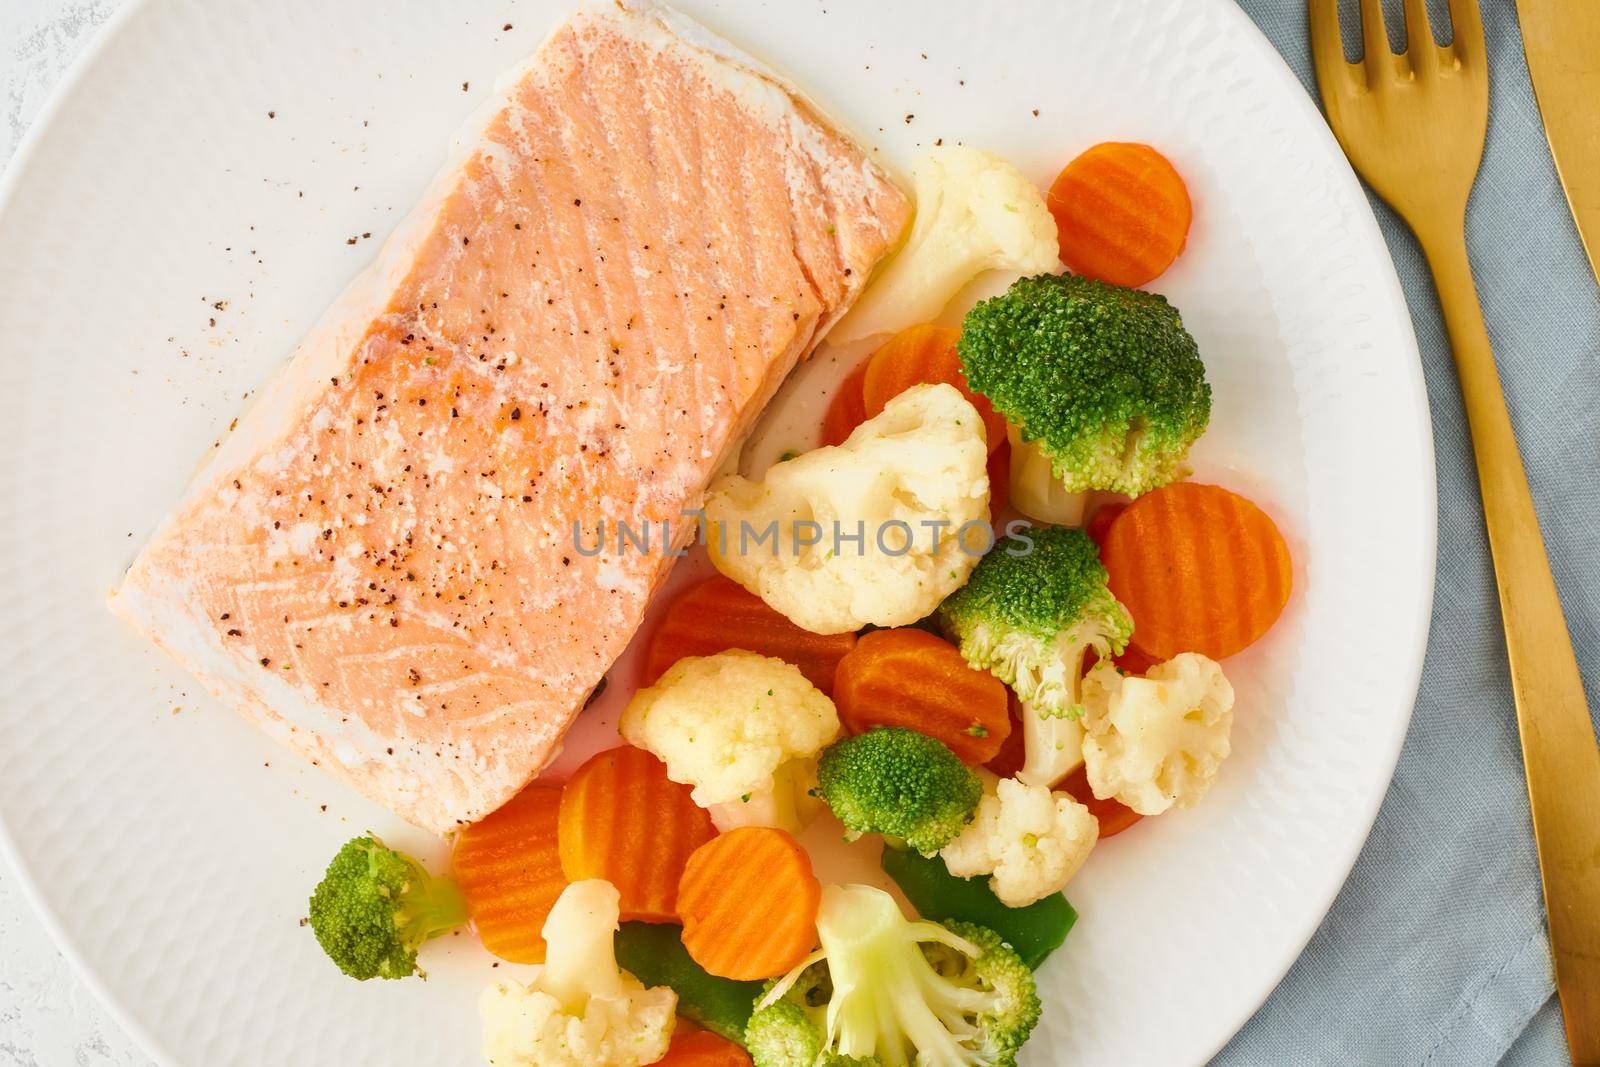 Steam salmon and vegetables, Paleo, keto, fodmap, dash diet. Mediterranean diet by NataBene